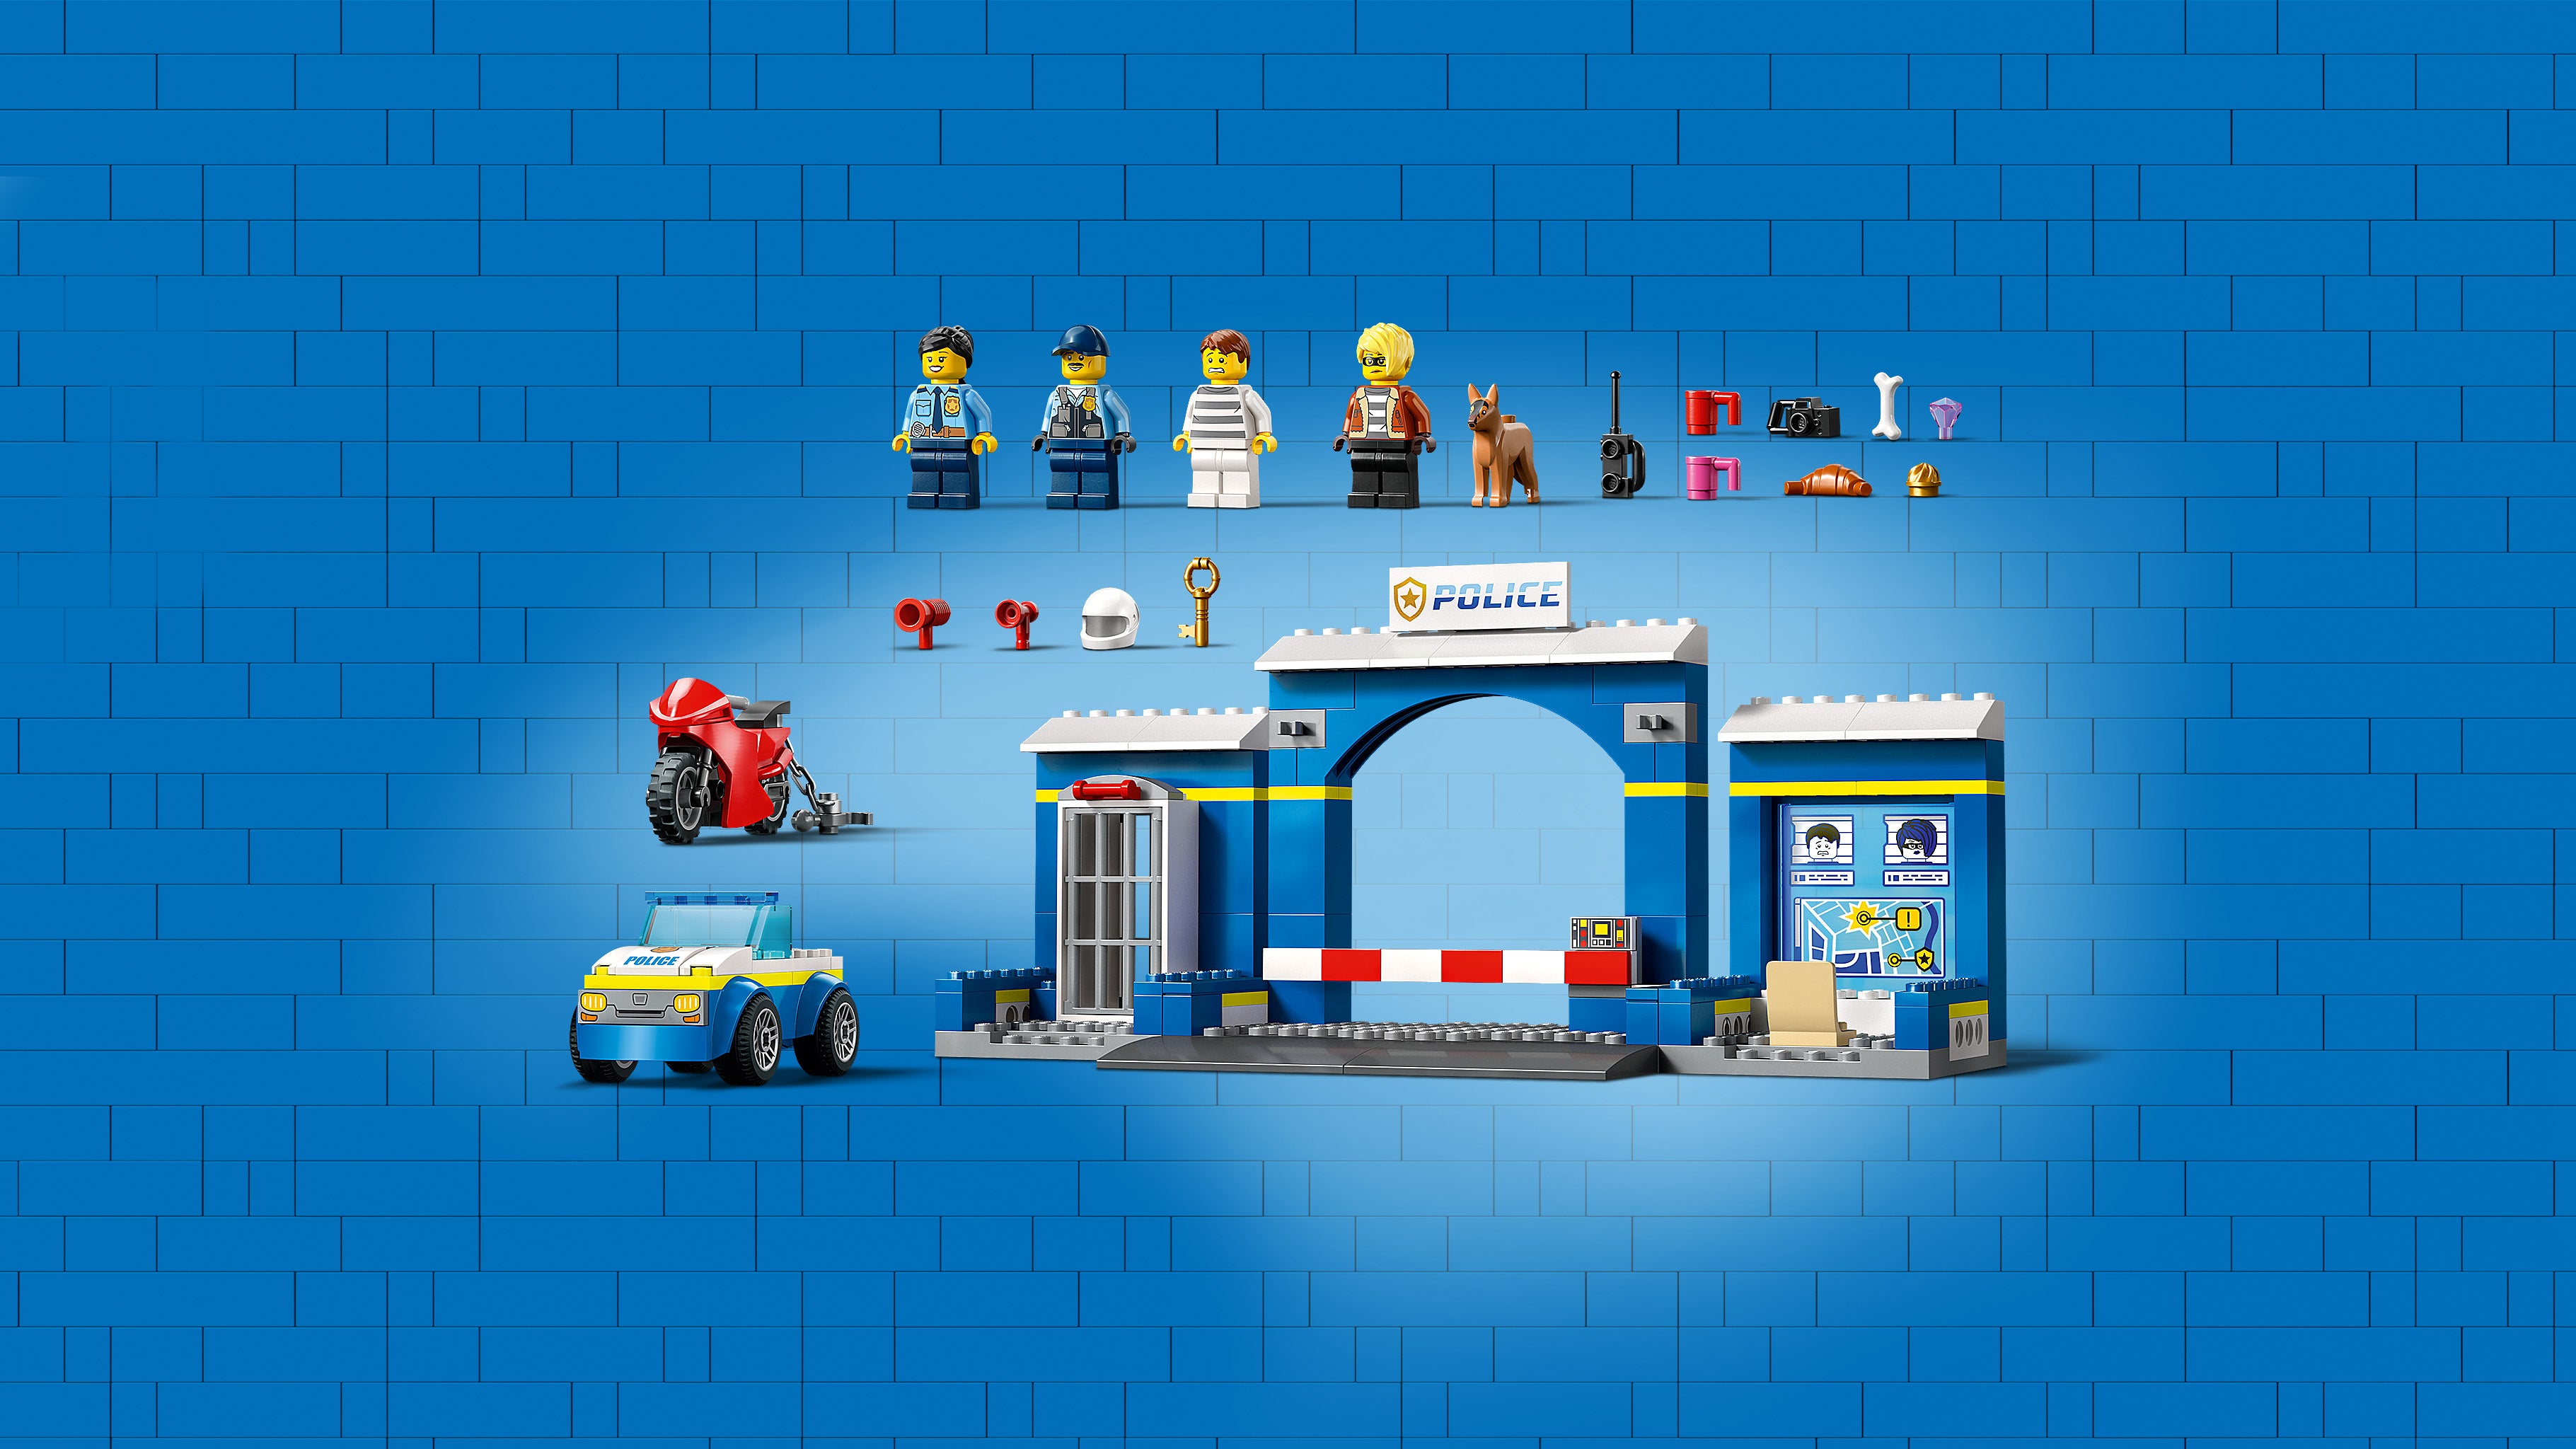 Lego 60370 Police Station Chase Set